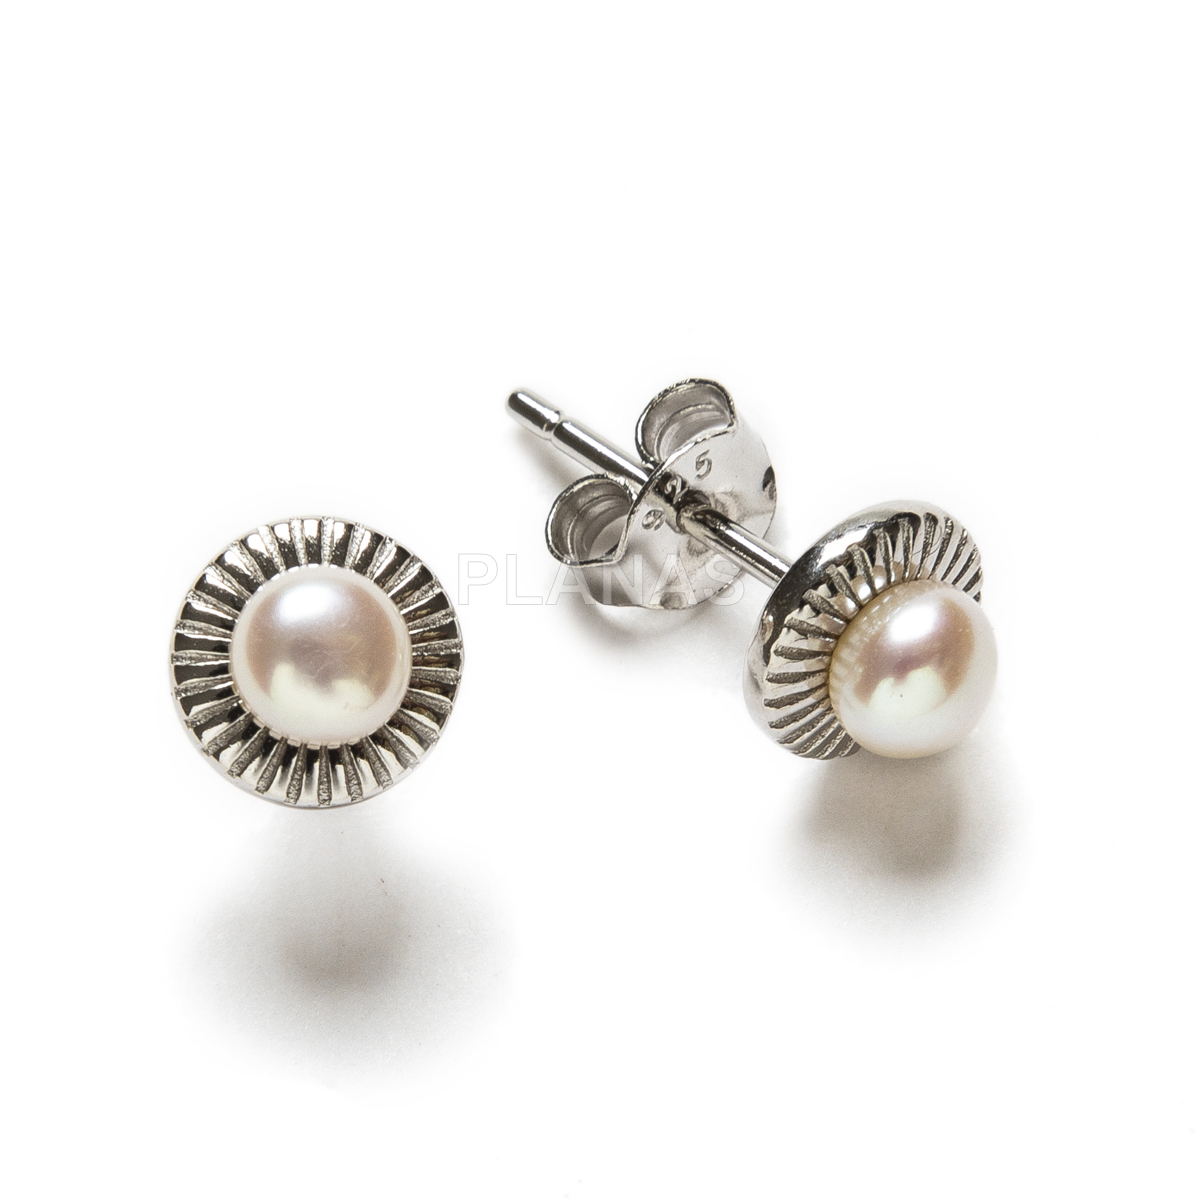 Pendientes en plata de ley Rodiada con perla Cultivada de 4mm.